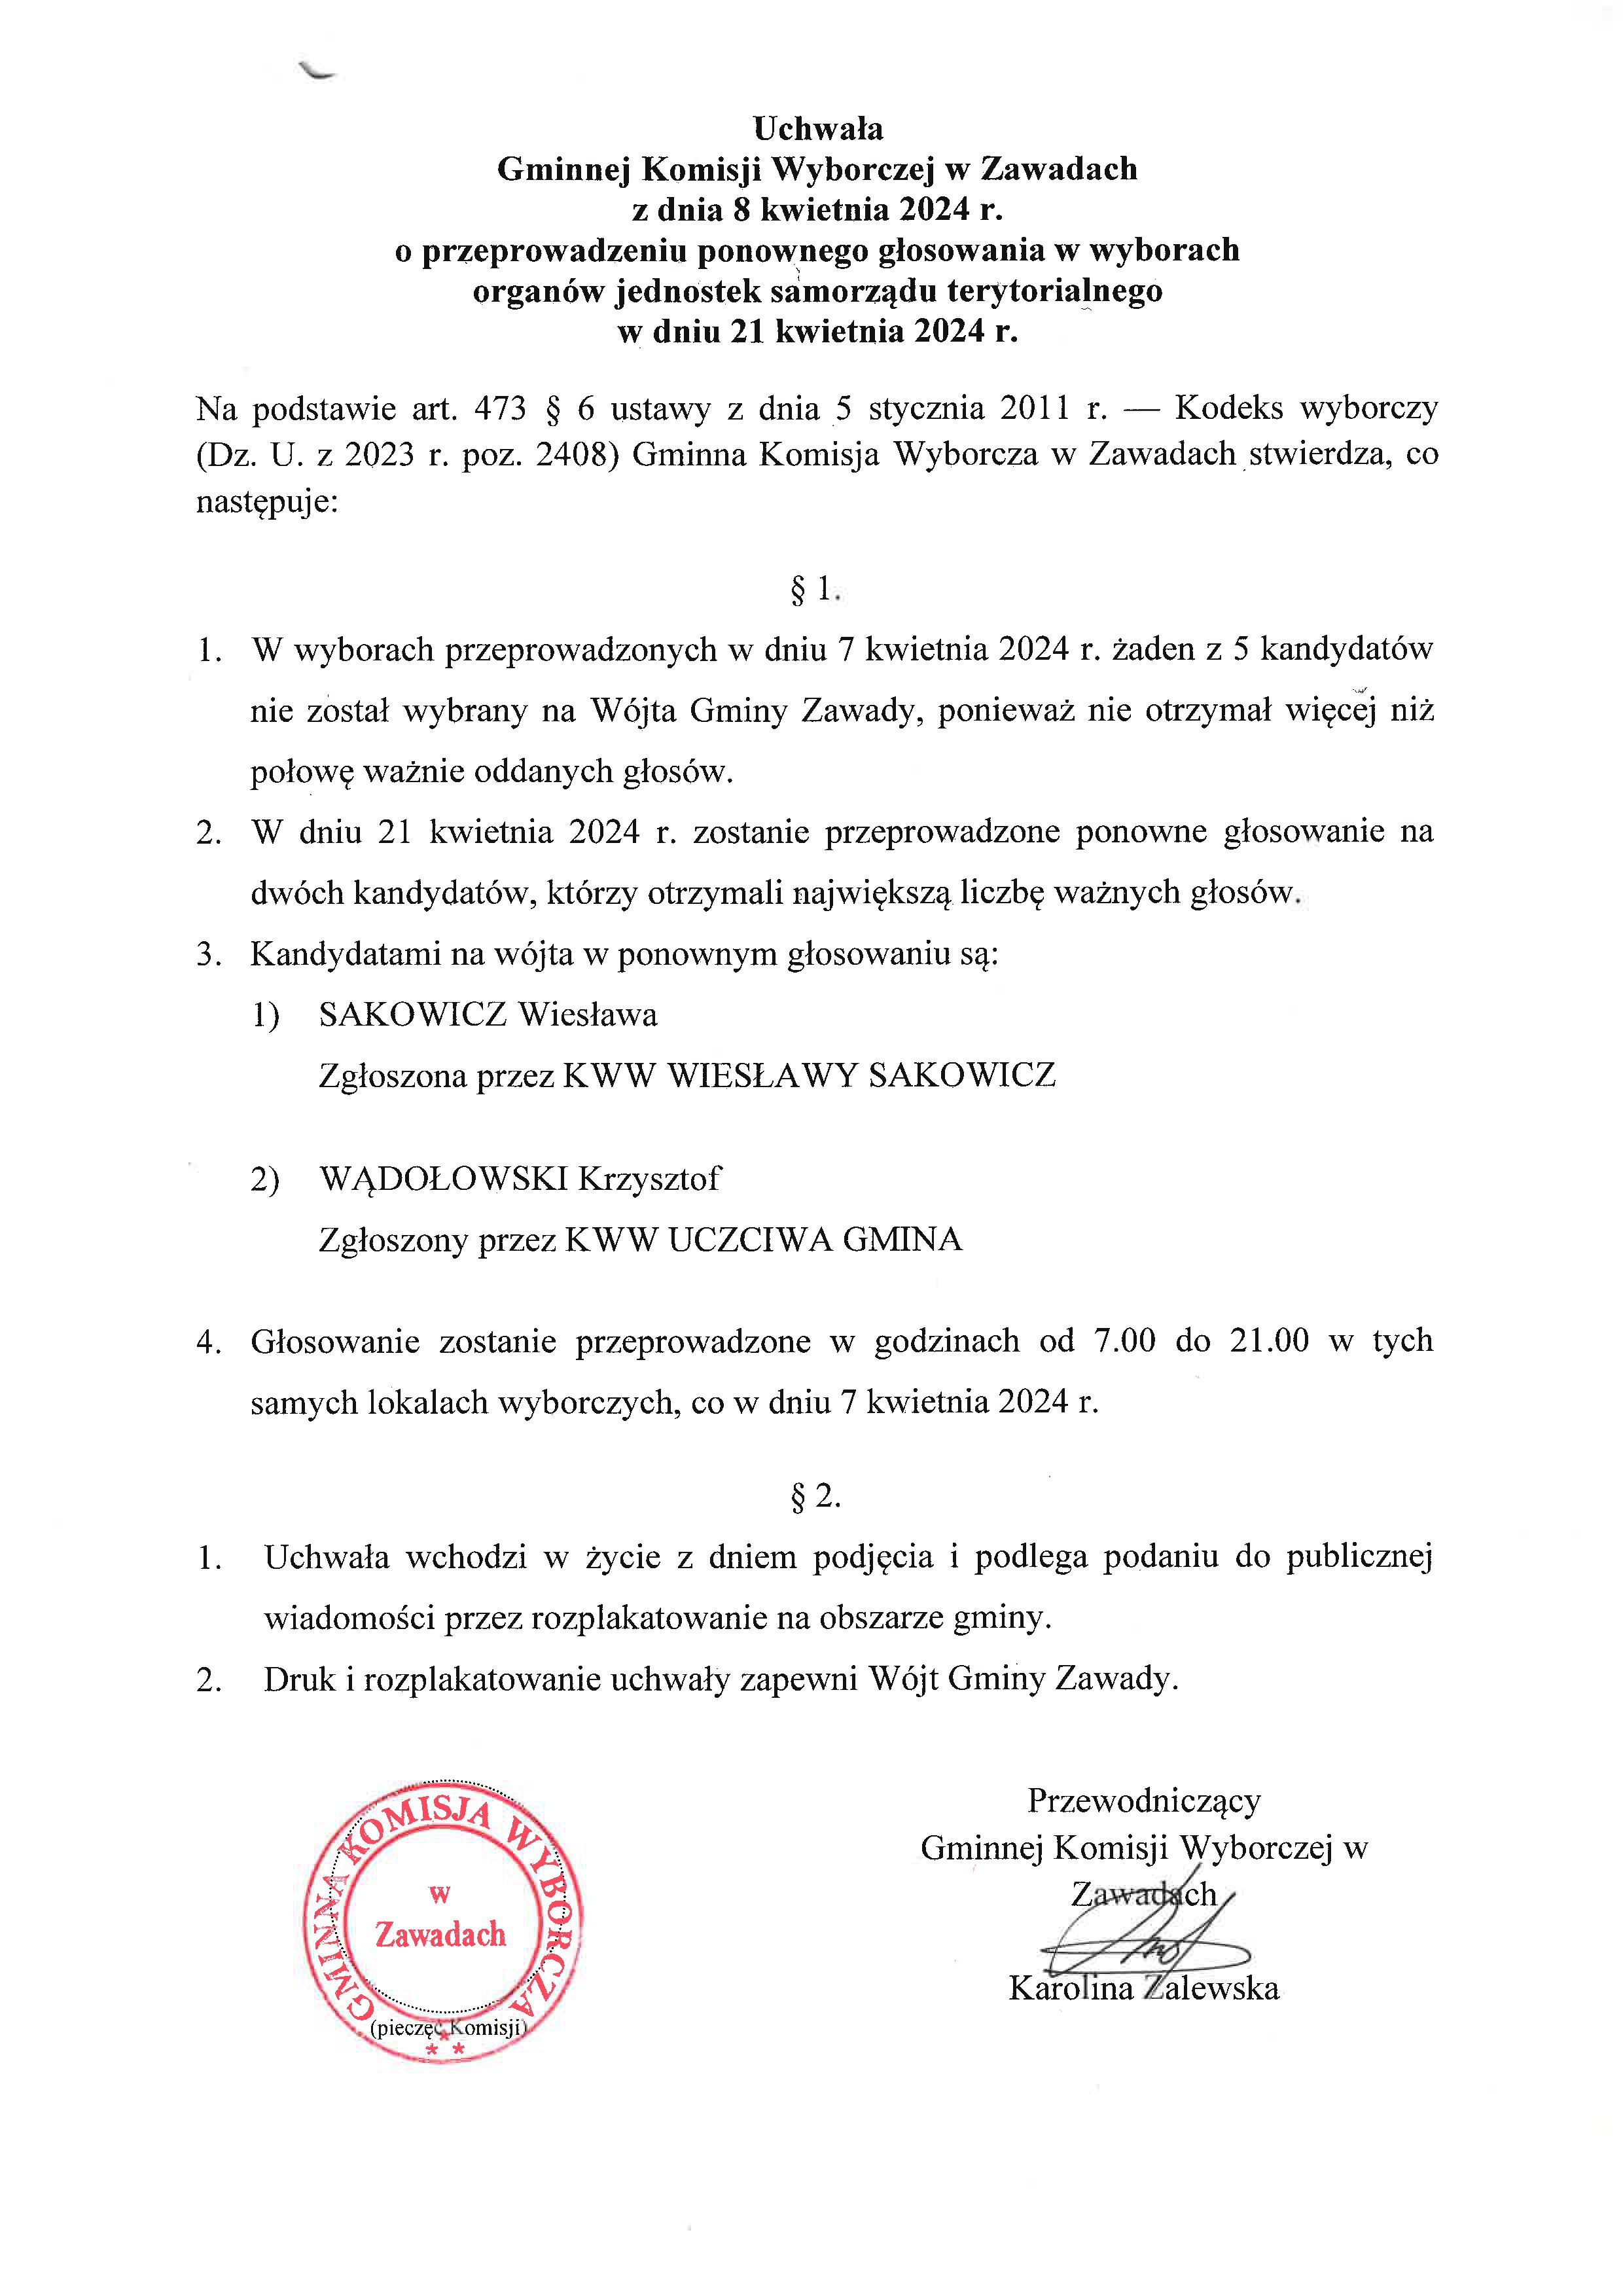 Uchwała GKW w Zawadach z dnia 8.04.2024 r o przeprowadzeniu ponownego głosowania